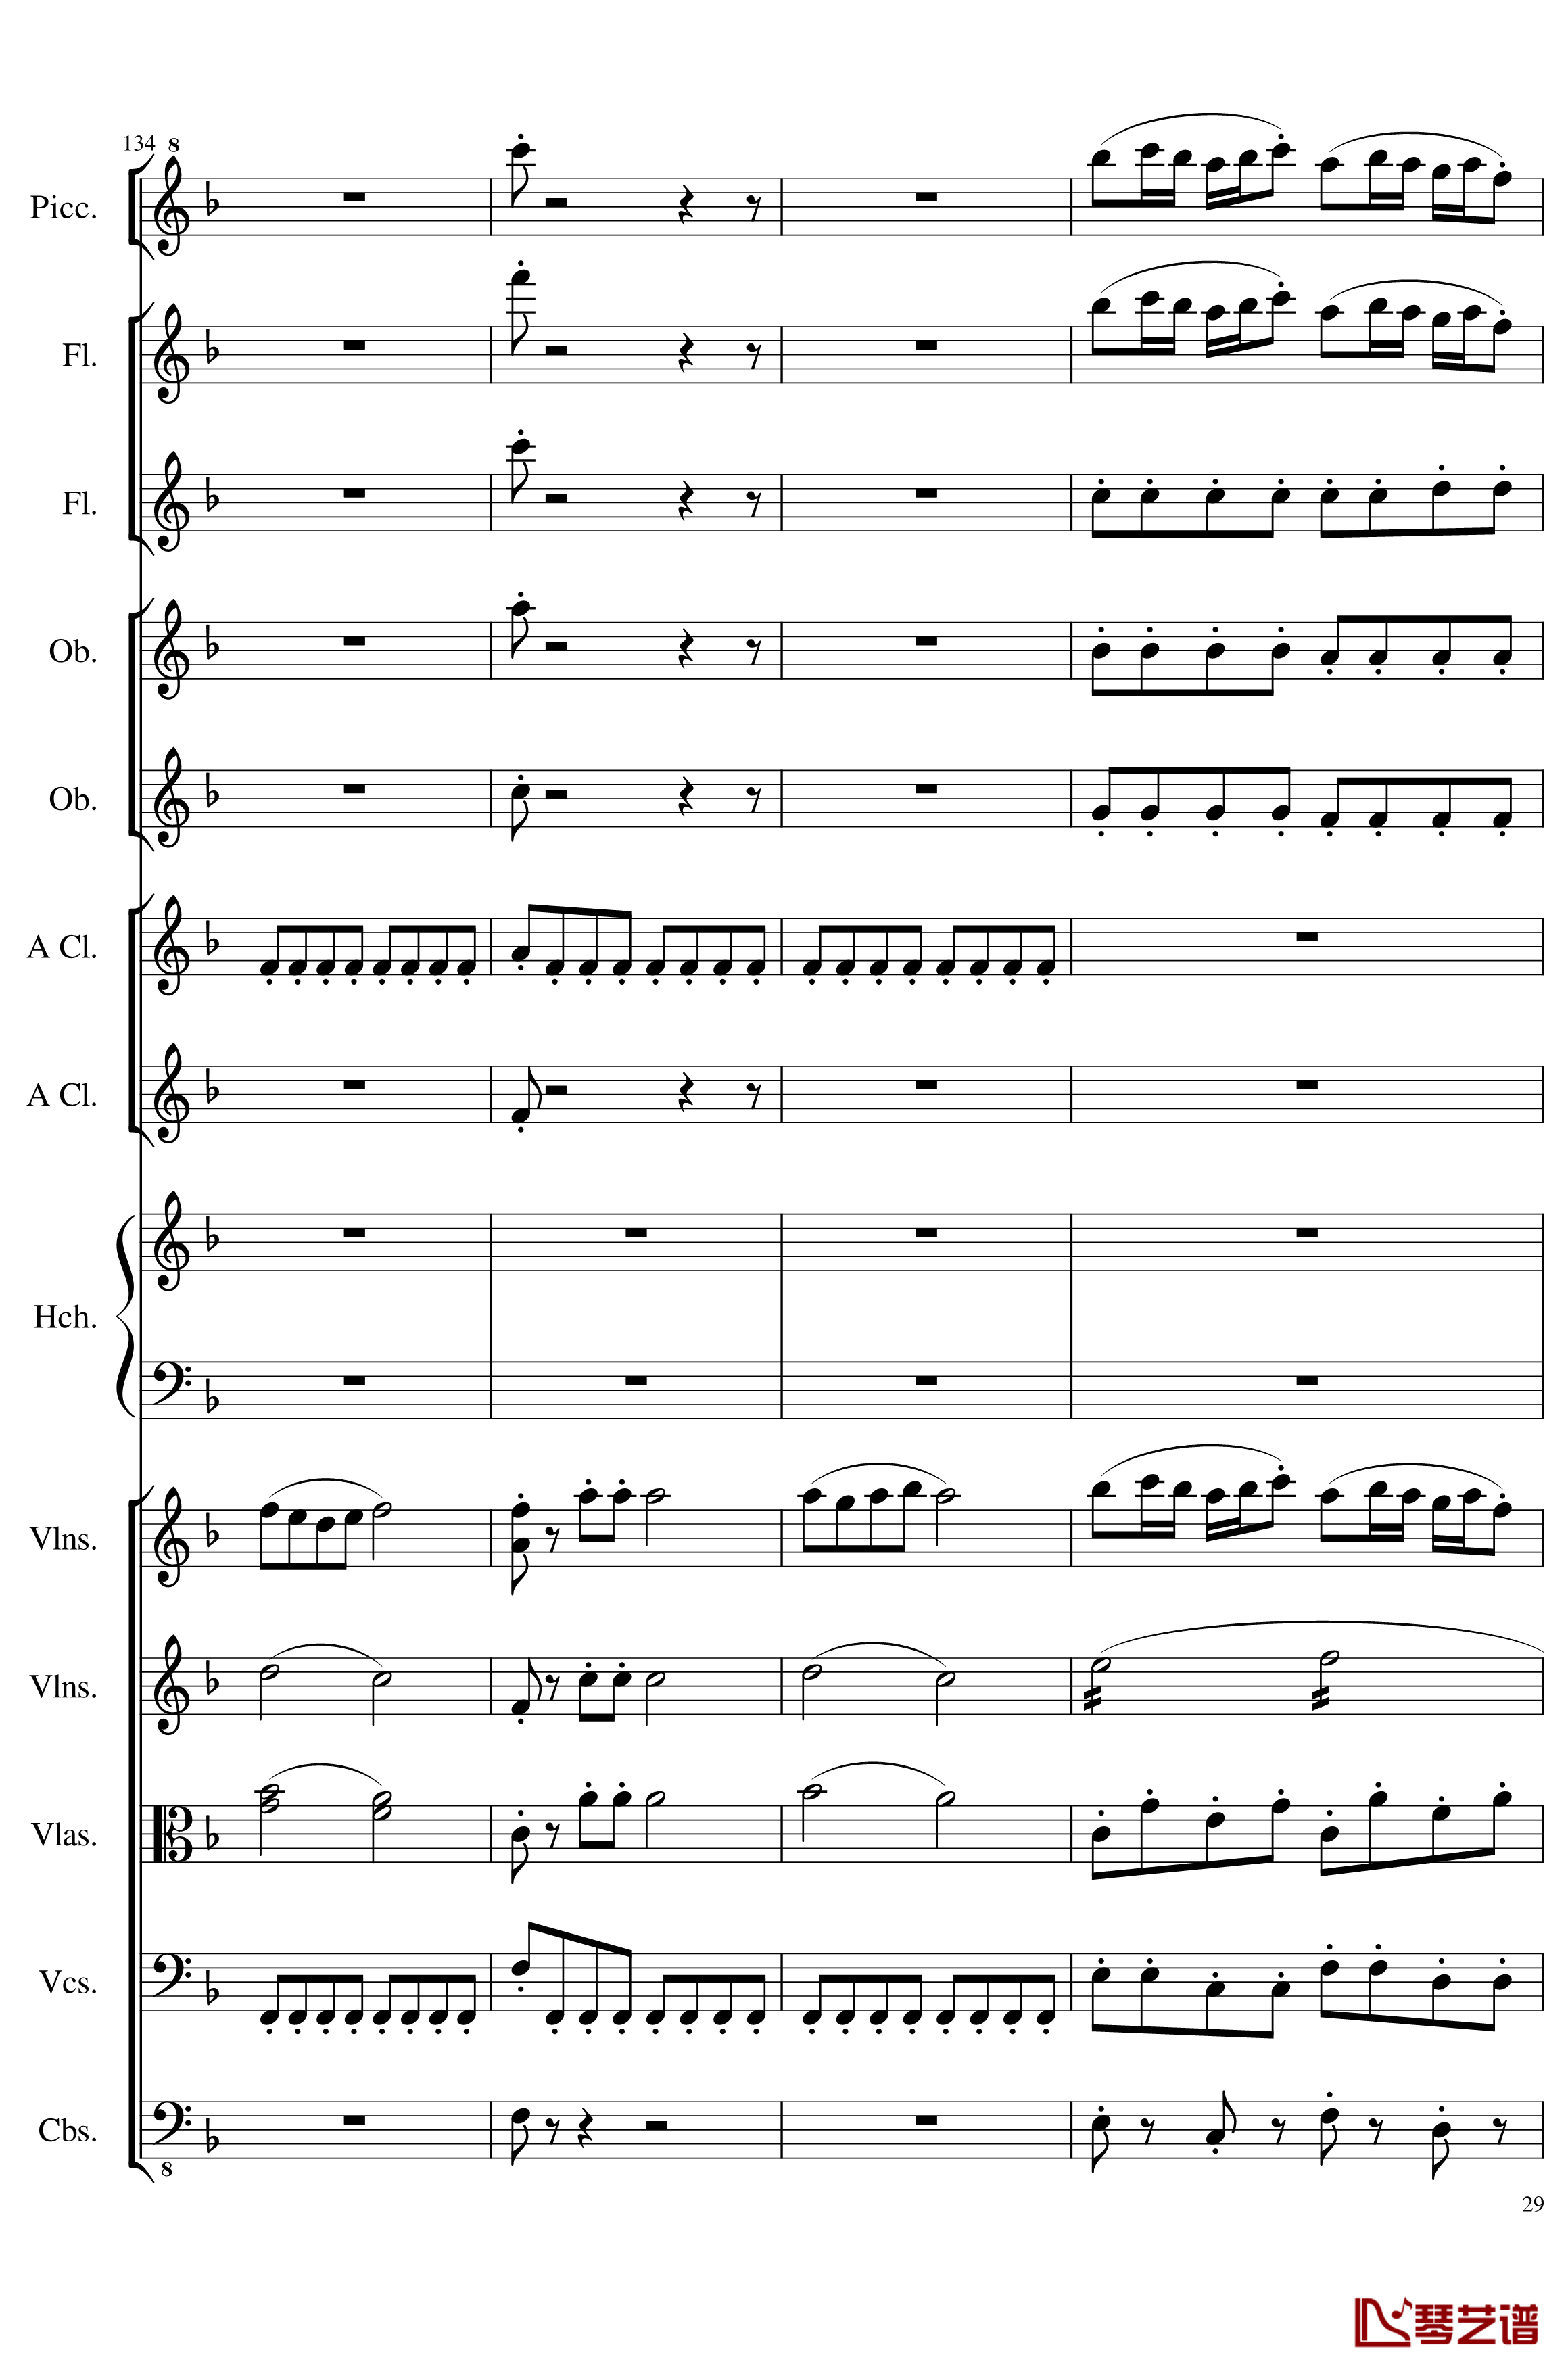 7 Contredanses No.1-7, Op.124钢琴谱-7首乡村舞曲，第一至第七，作品124-一个球29